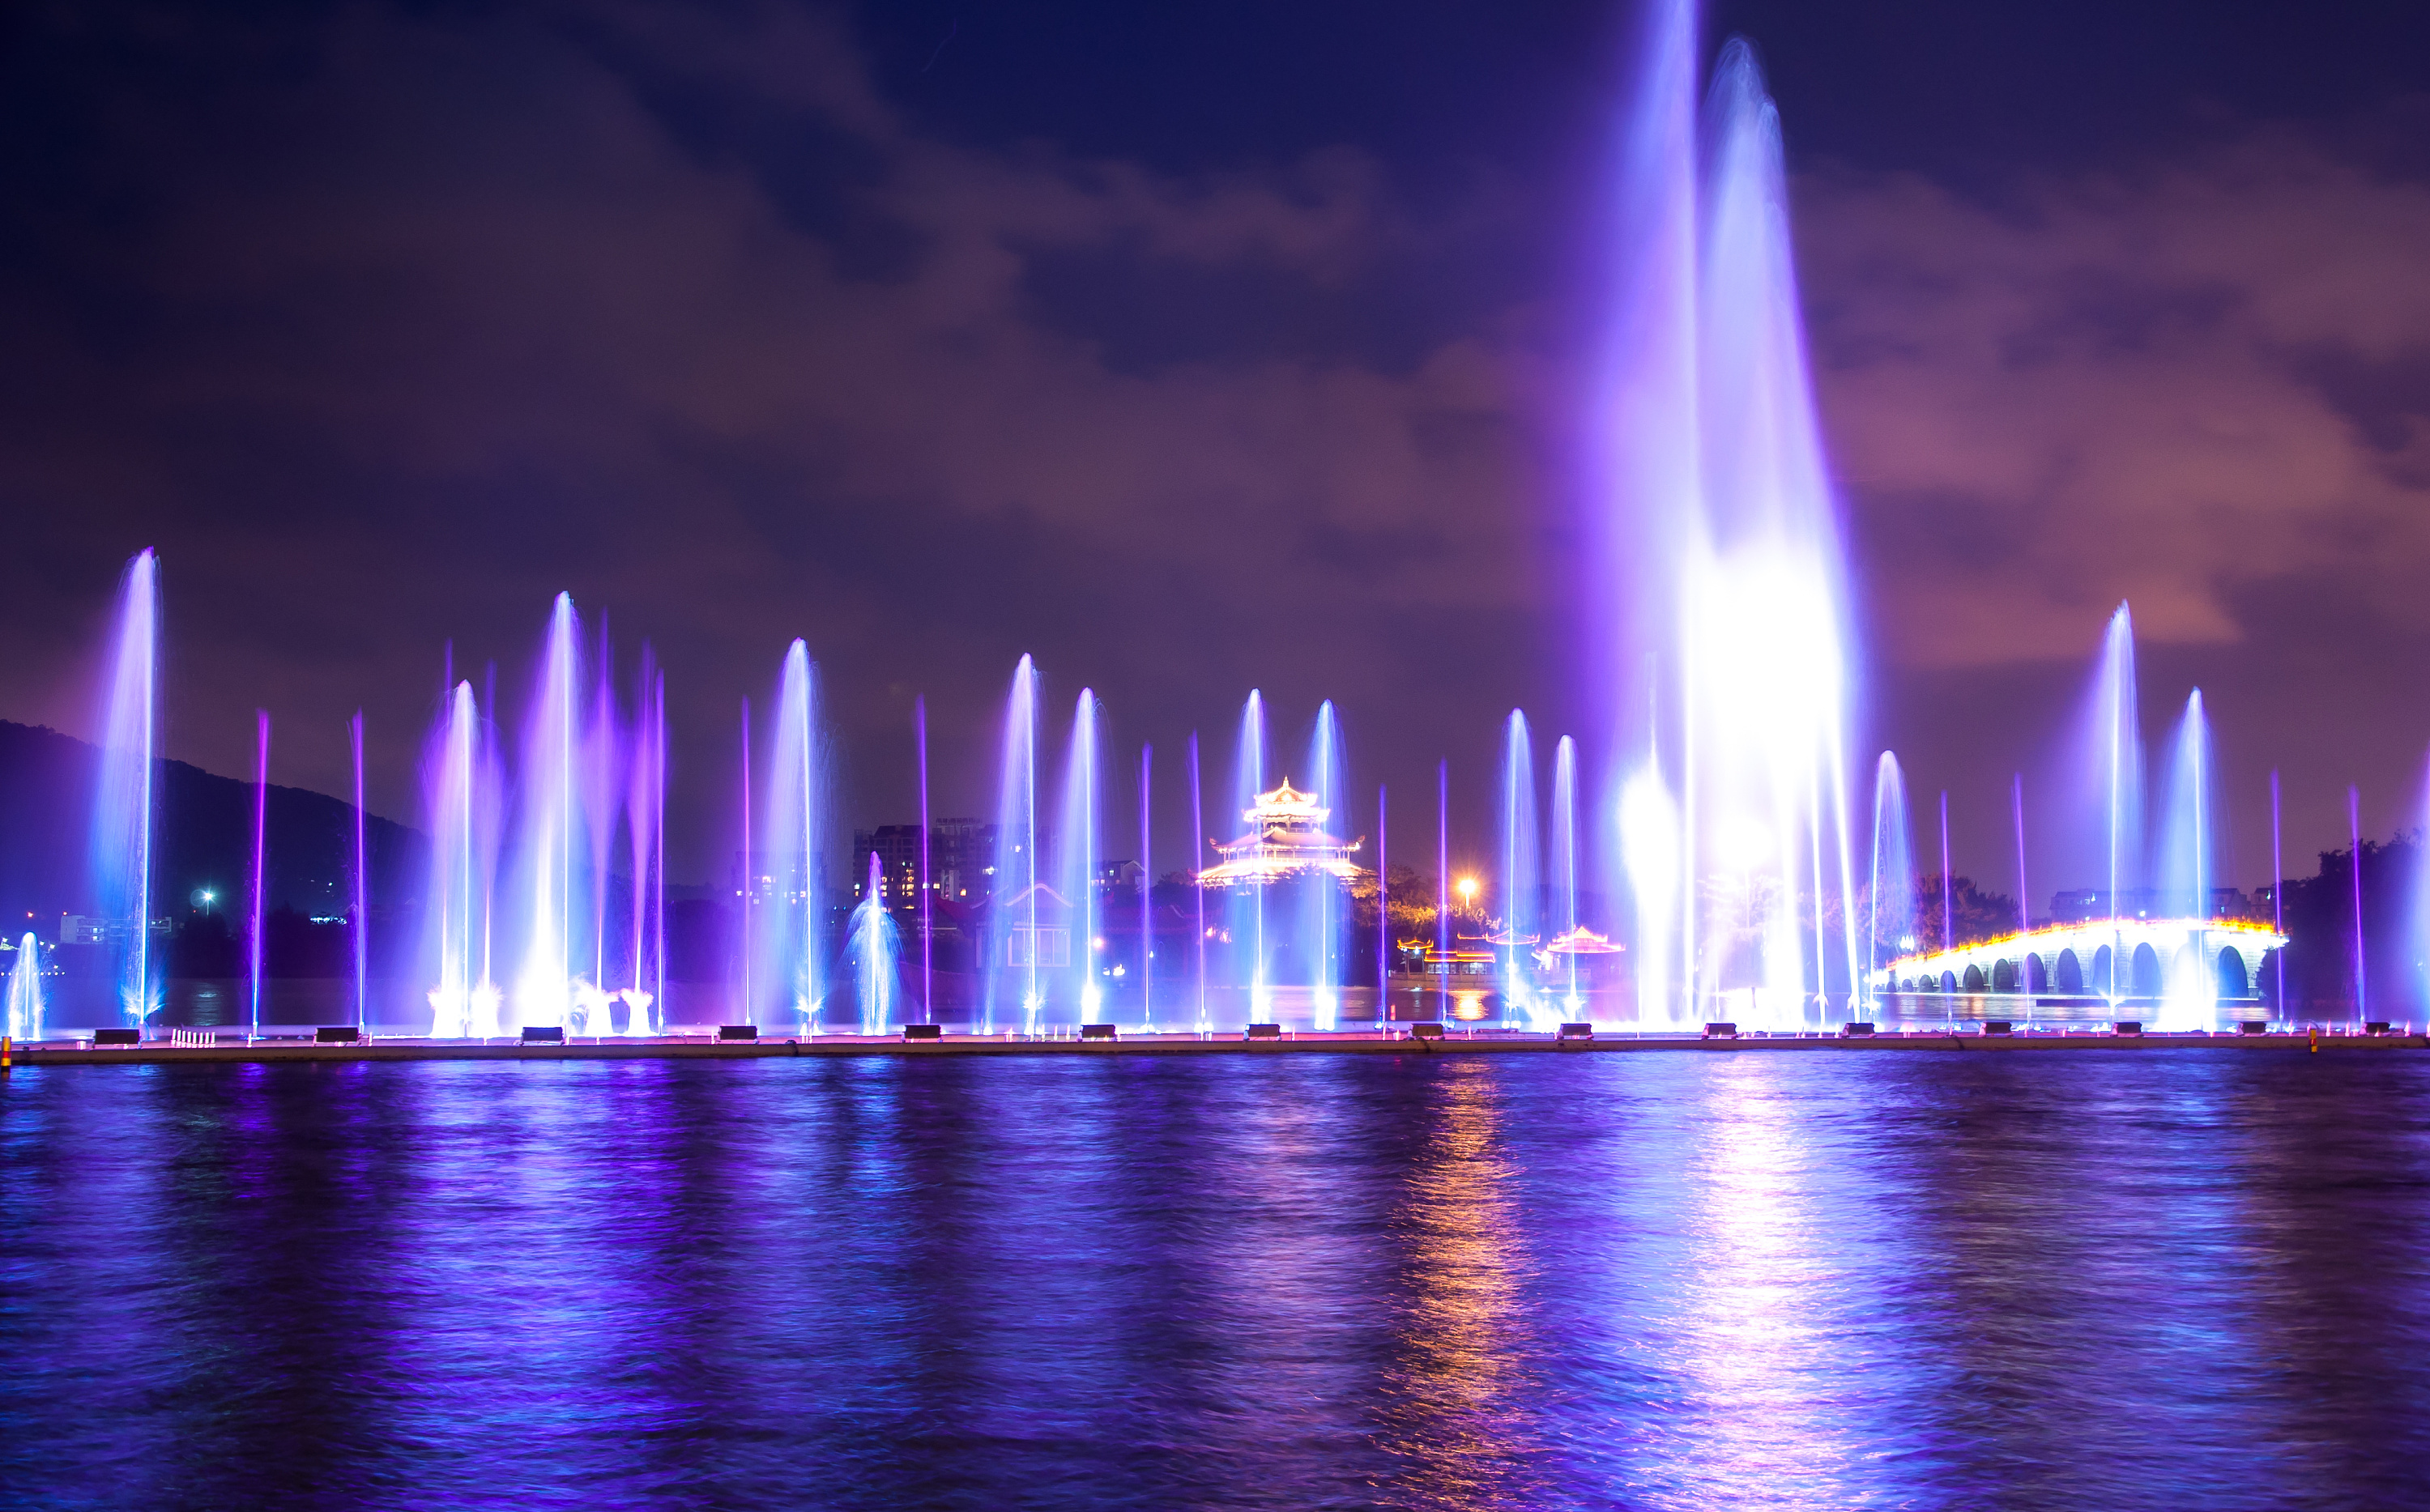 双清湾公园喷泉2022图片